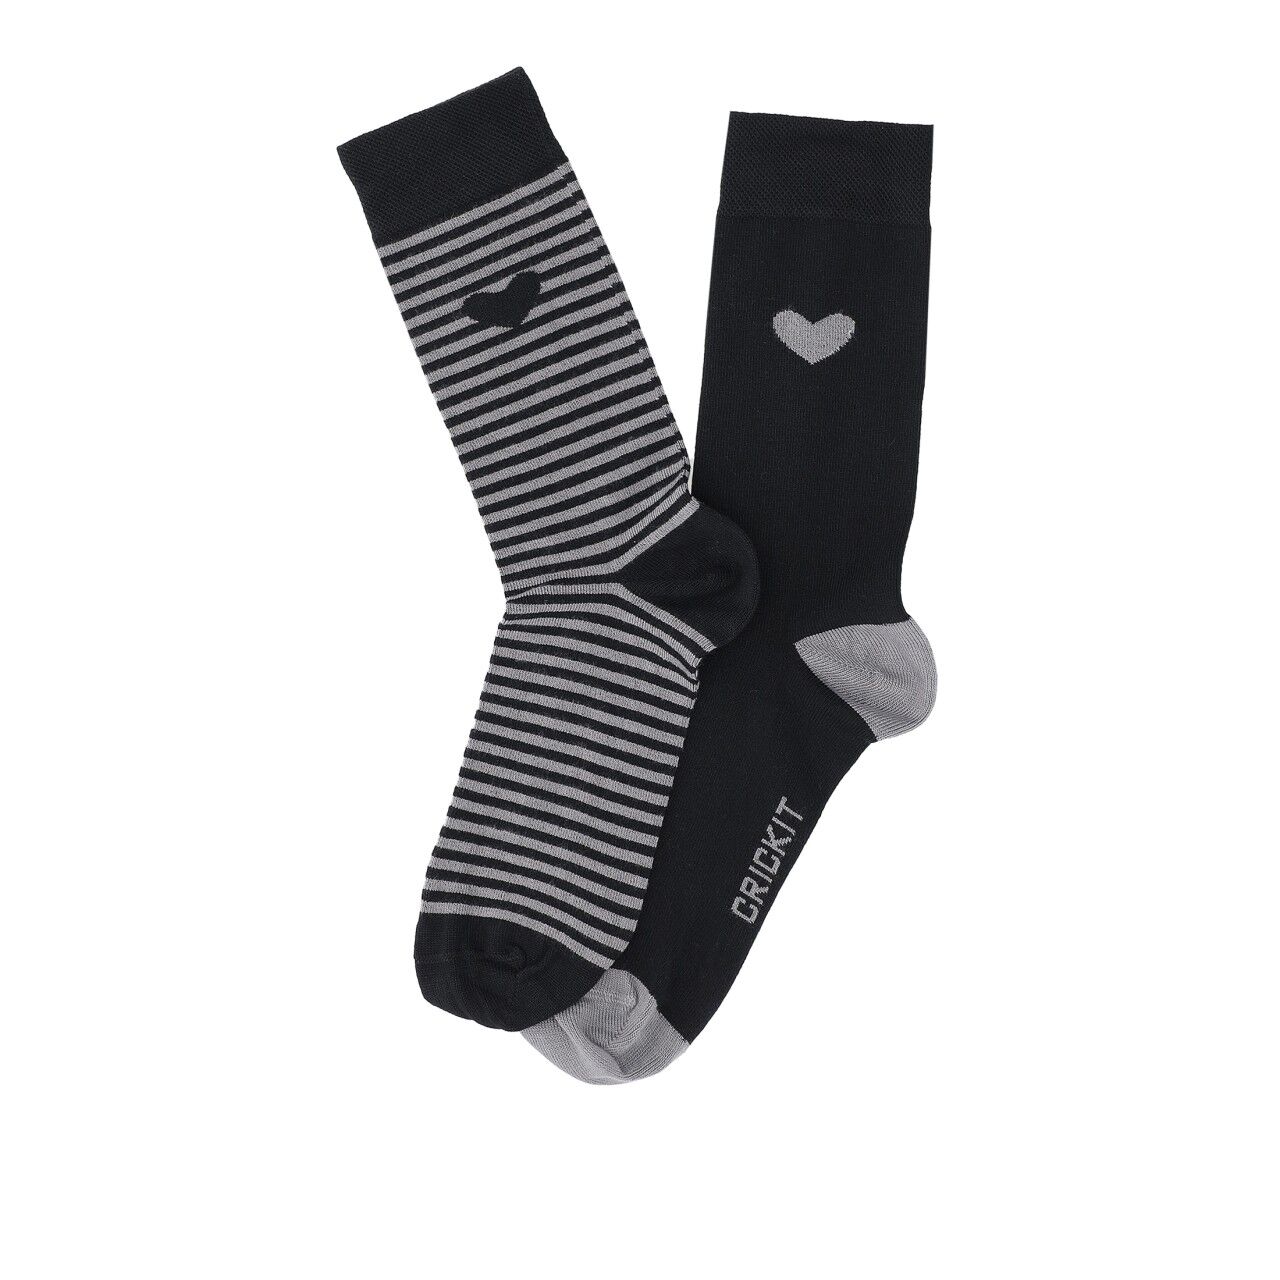 SUNNY Socks mit Streifen und Herz Geschenkebox 2-Pack